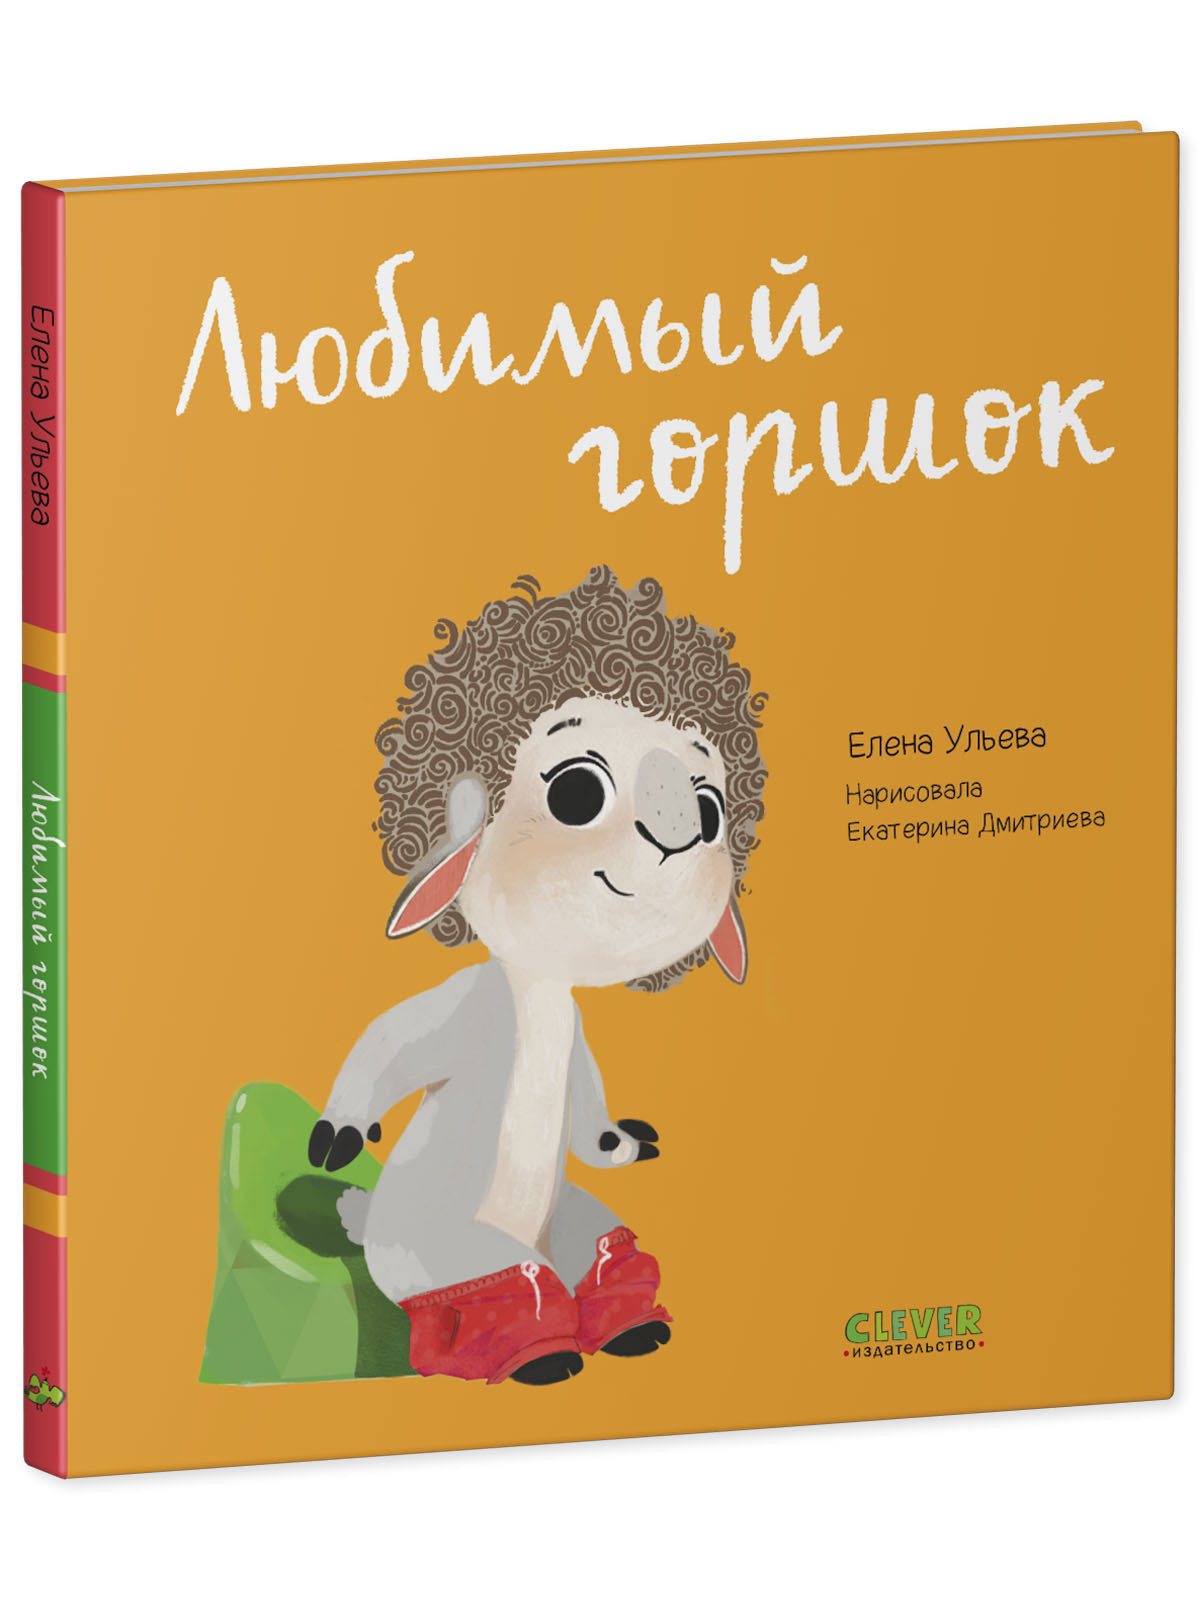 Наталья Ерофеева: Мой любимый детский сад